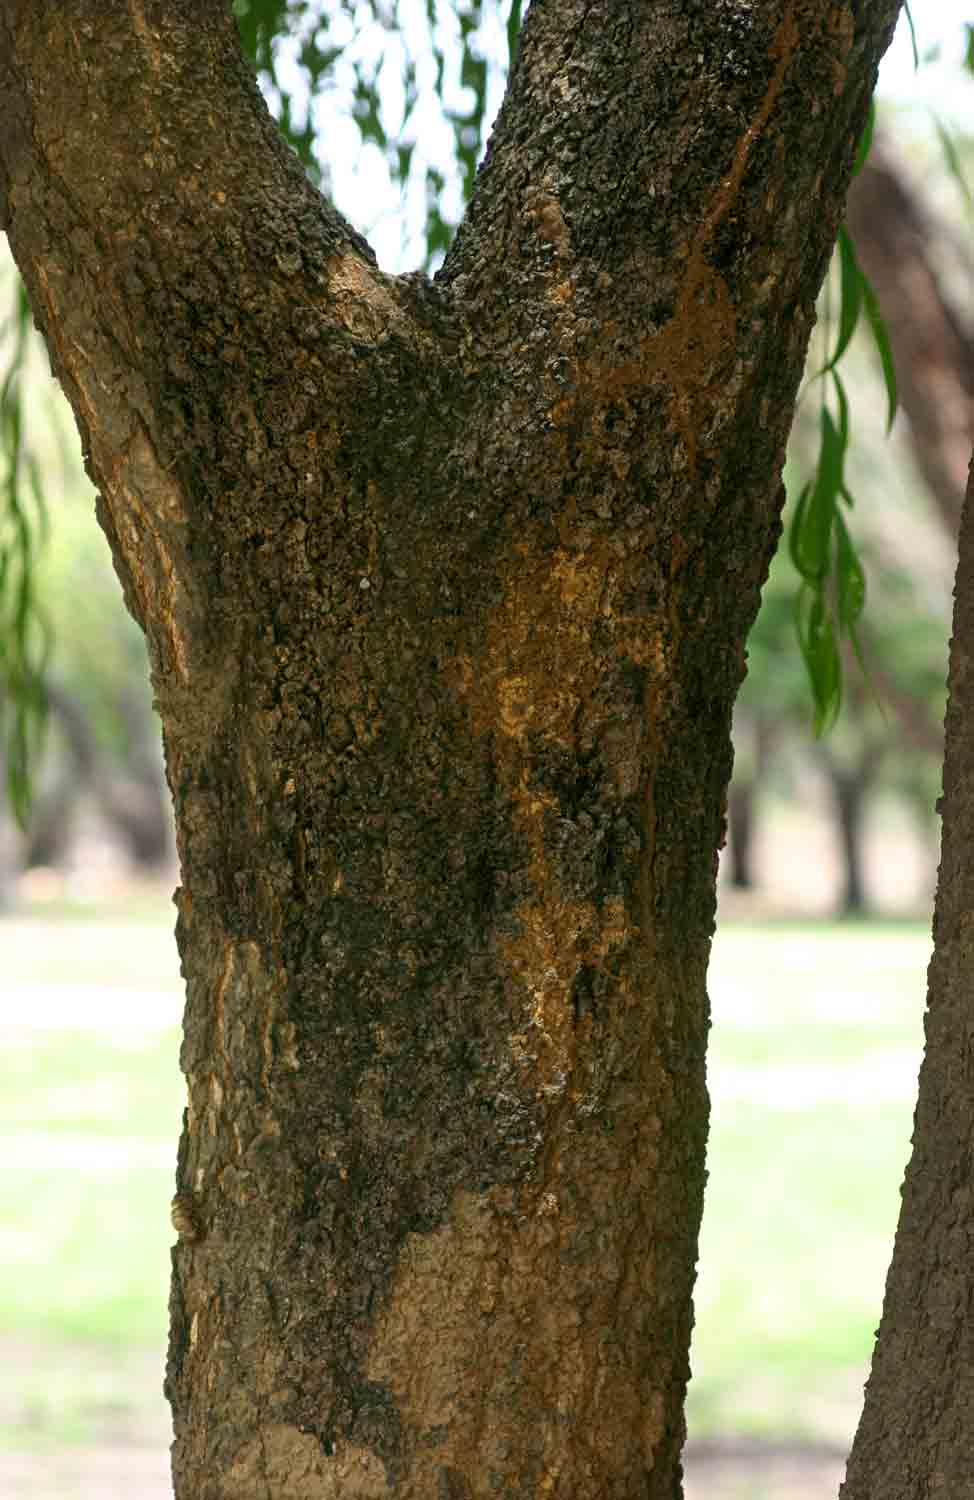 Boscia salicifolia